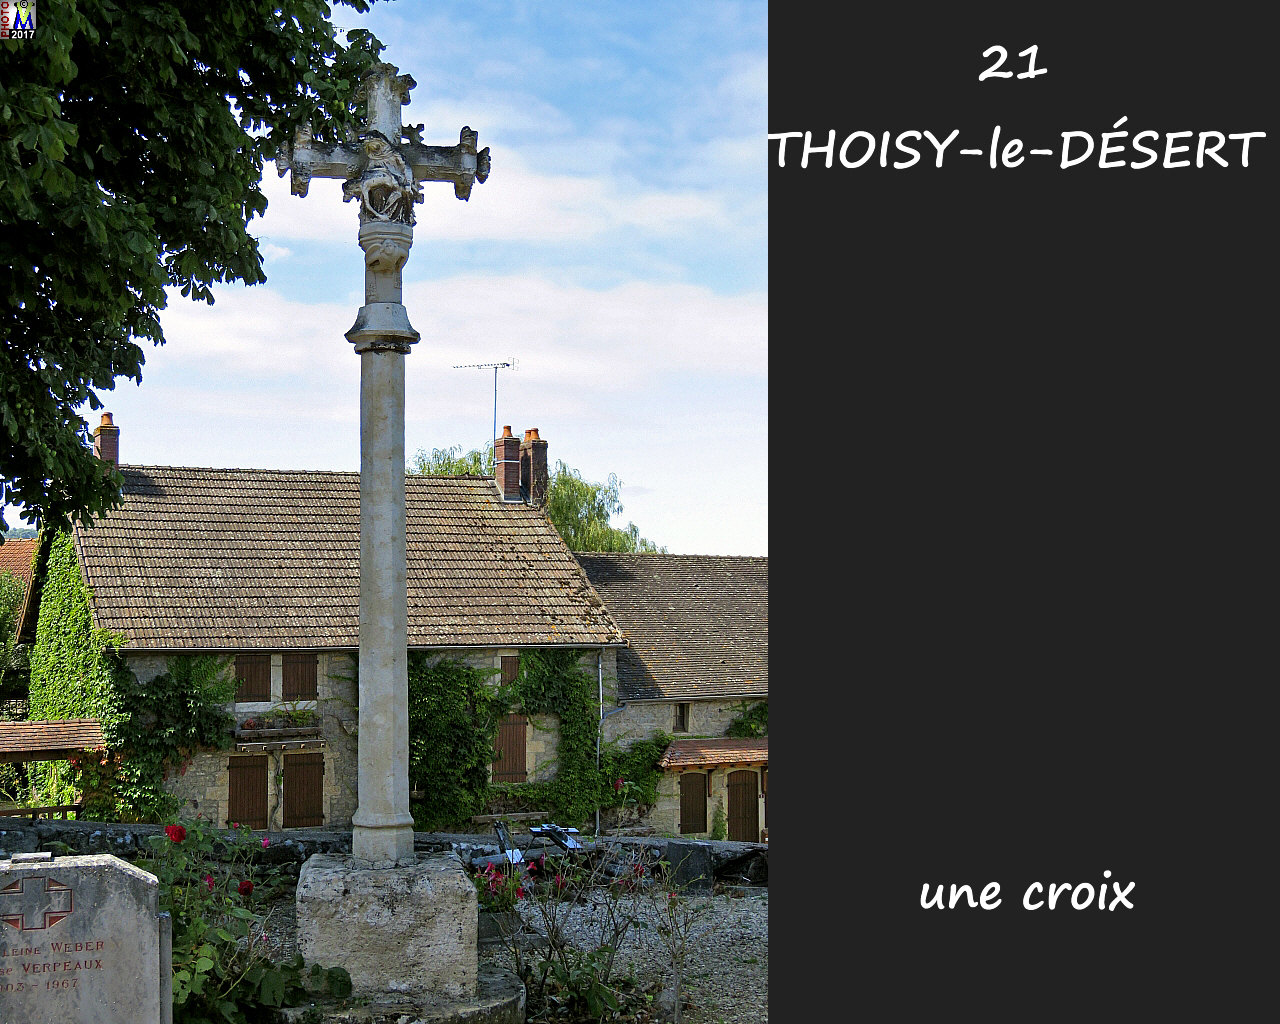 21THOISY-le-DESERT_croix_100.jpg